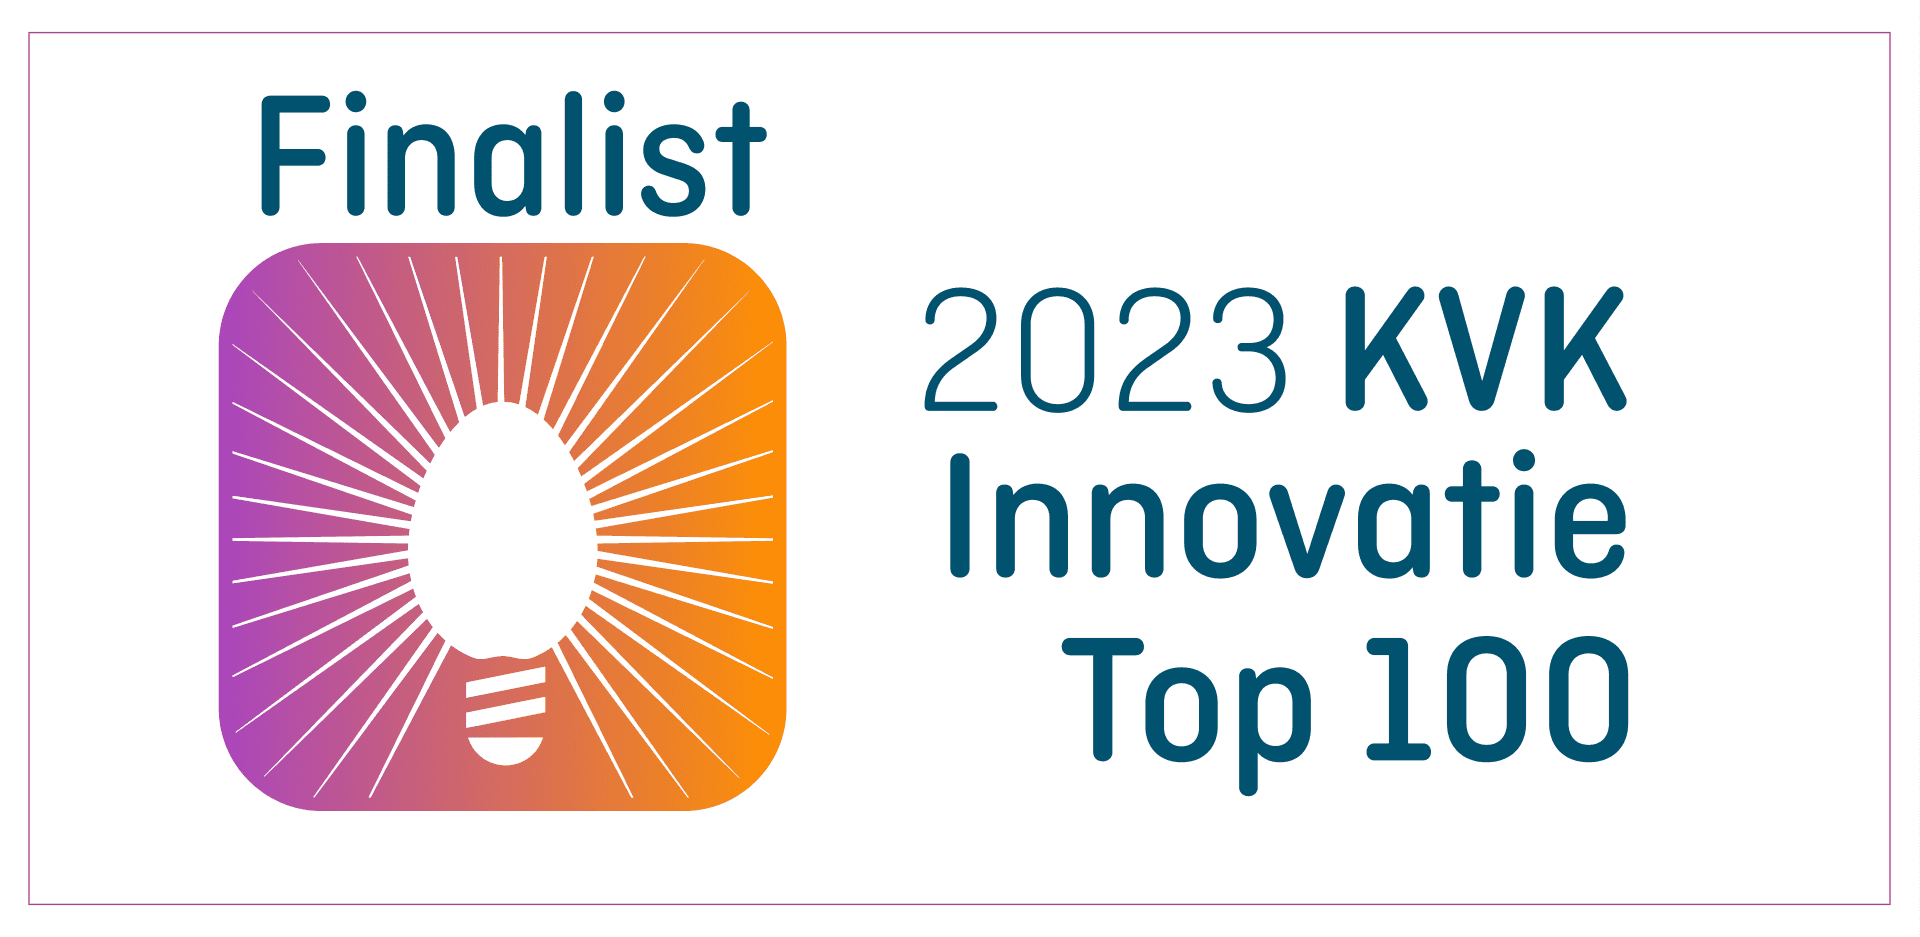 keurmerk-2023-KVK-Innovatie-Top-100_horizontaal-finalist-logo-kleur-1.png